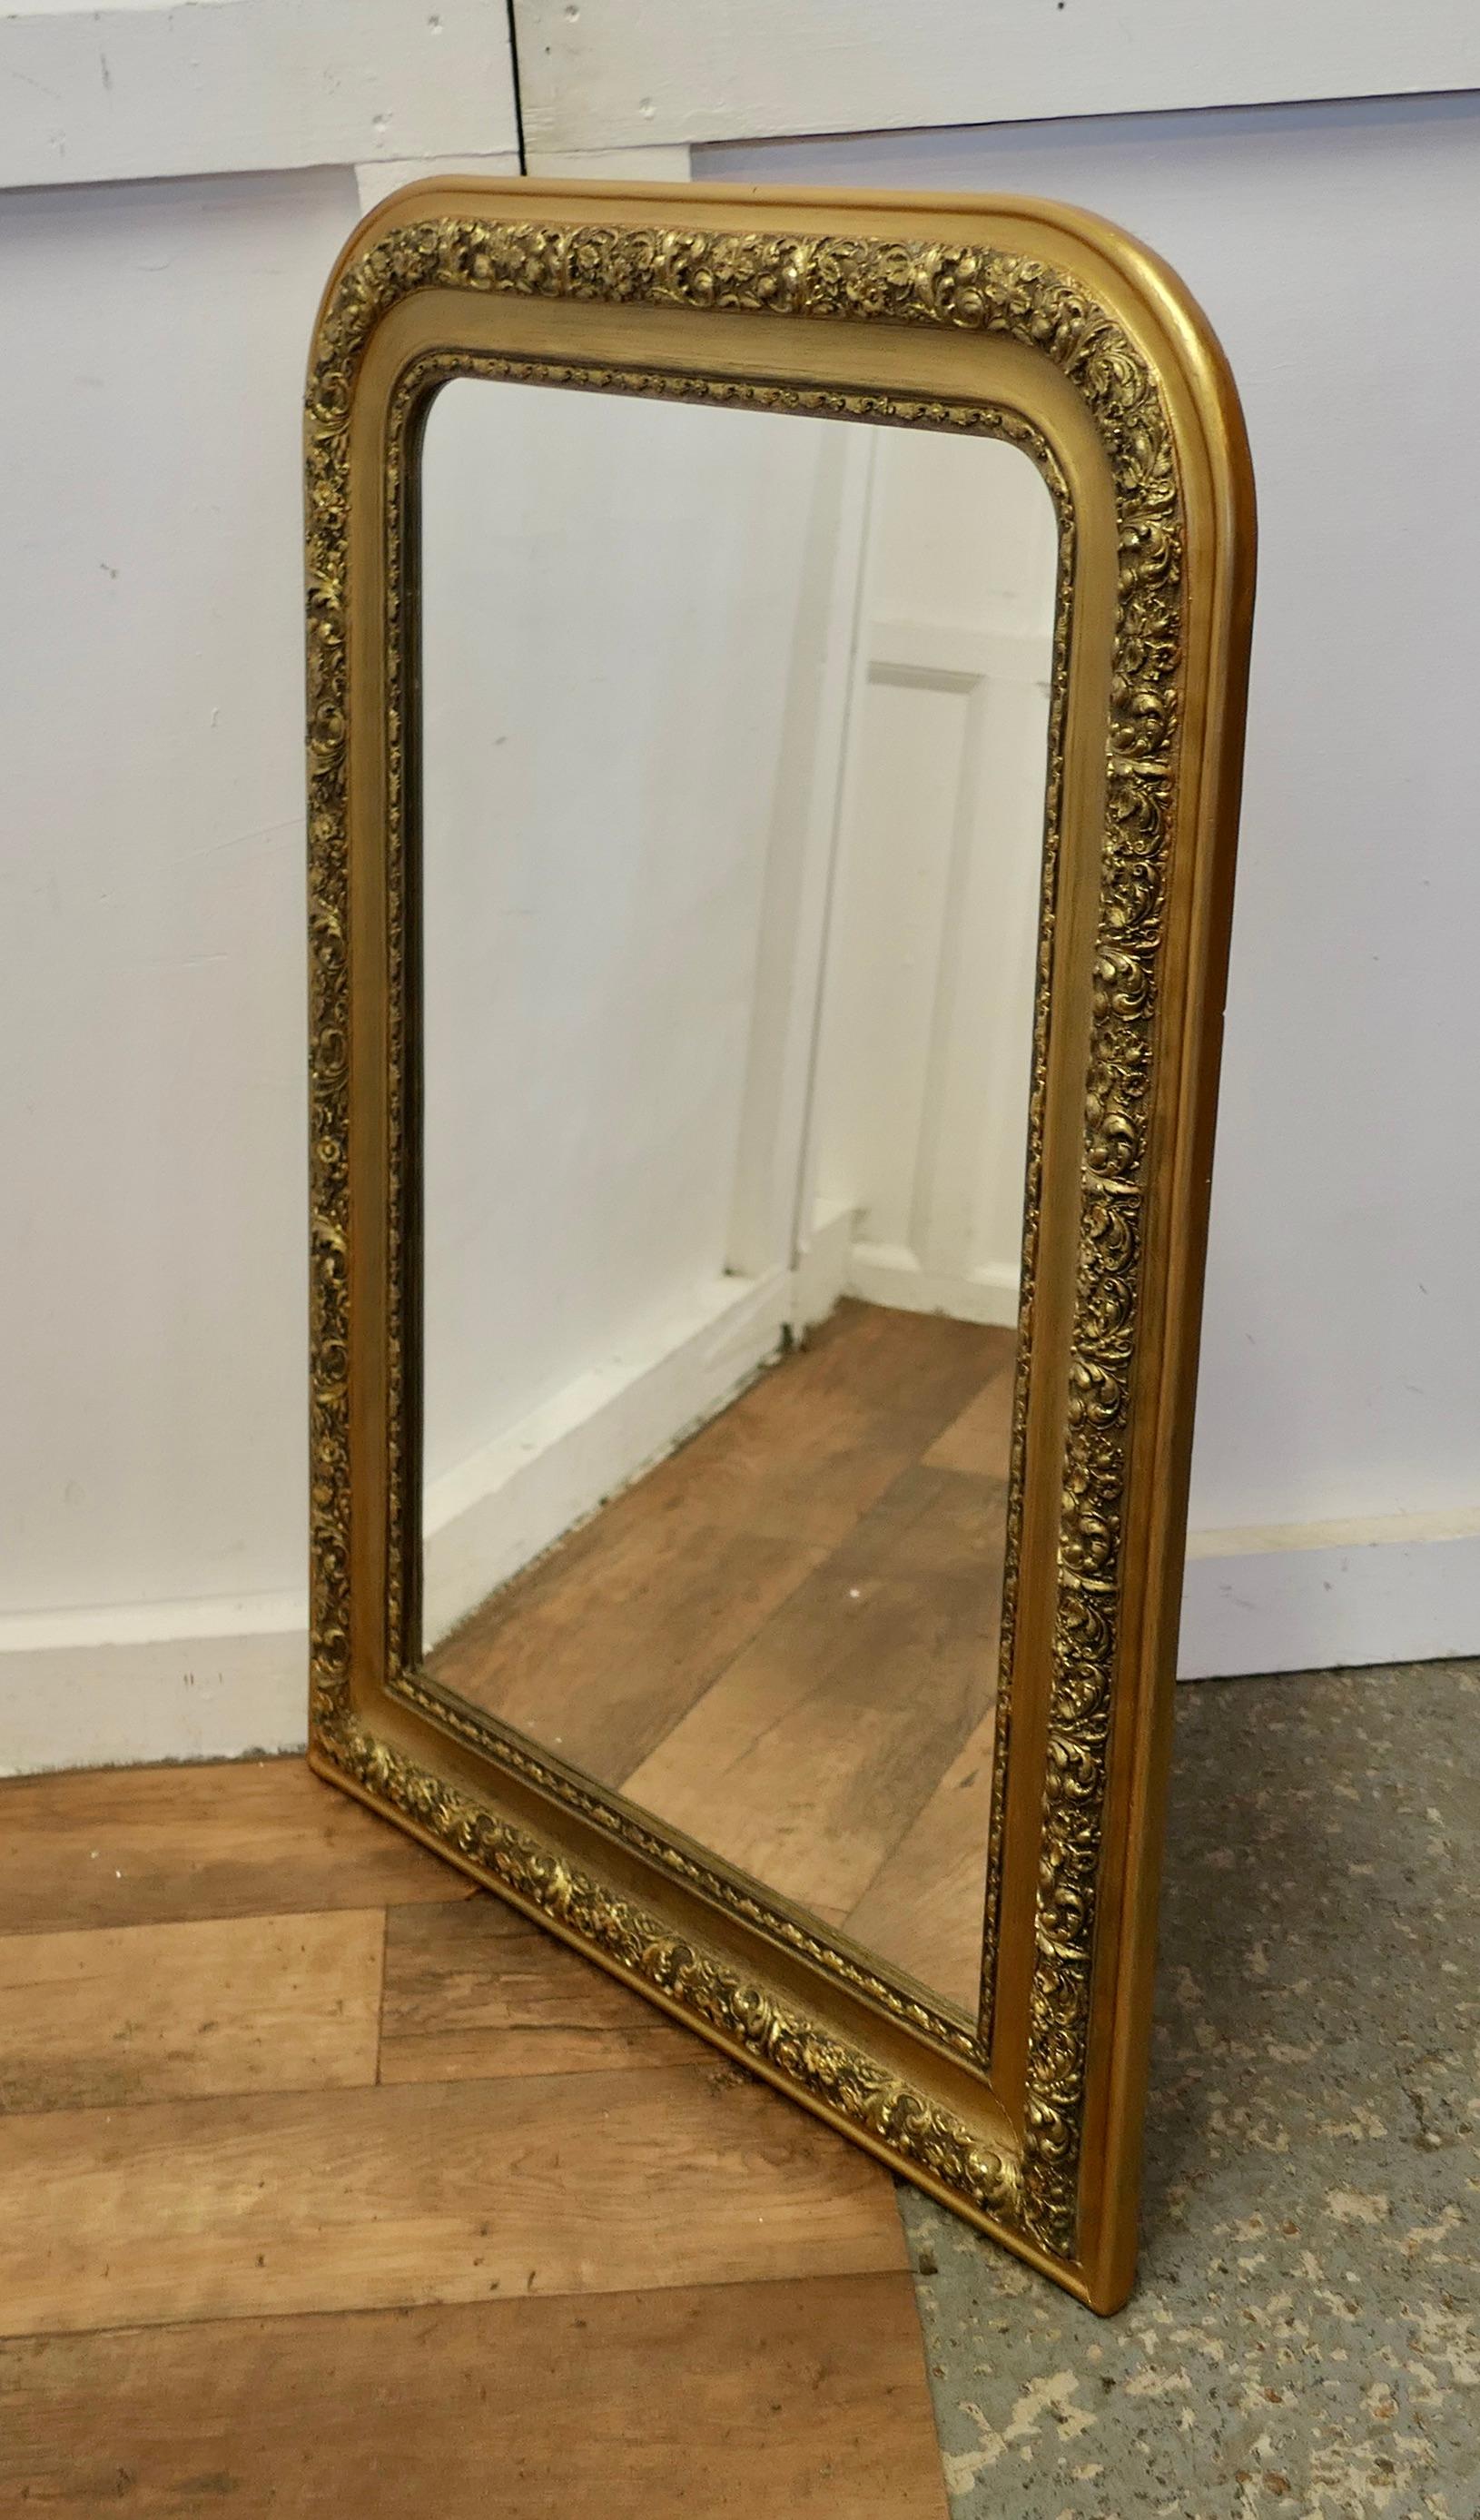 Grand miroir doré Louis Philippe du 19ème siècle

Il s'agit d'un très beau miroir mural, un véritable exemple d'ameublement antique chic français, le cadre du miroir de 5